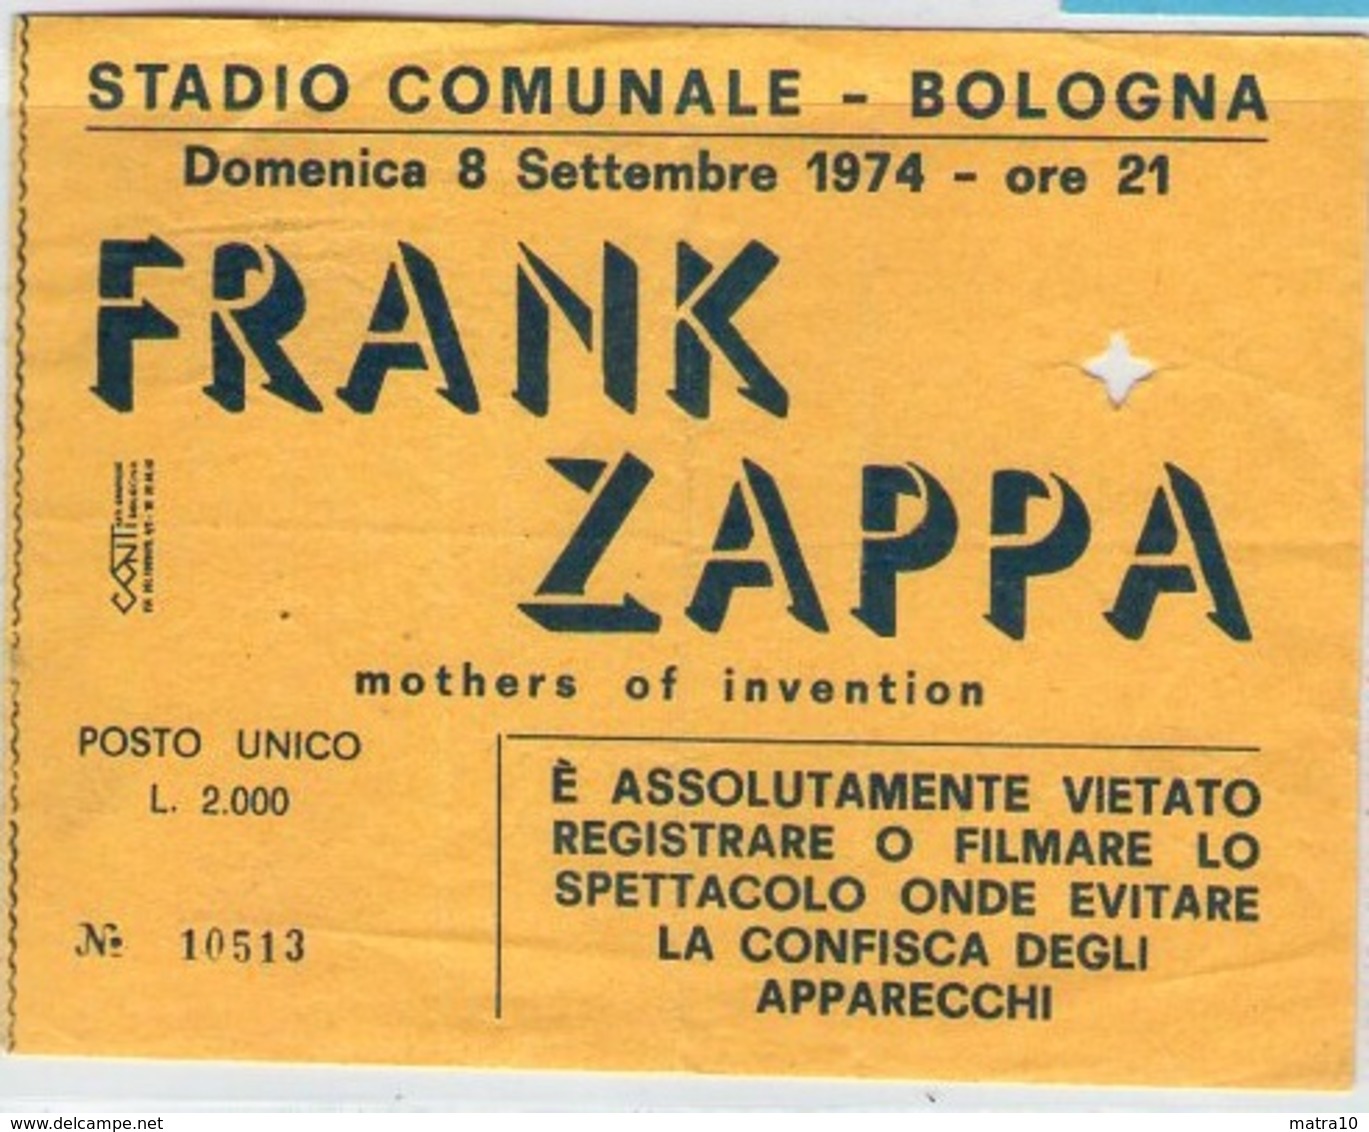 1974 FRANK ZAPPA MOTHERS OF INVENTION TICKET STUB BIGLIETTO BOLOGNA STADIO CONCERTO CONCERT ROCK POP - Biglietti Per Concerti